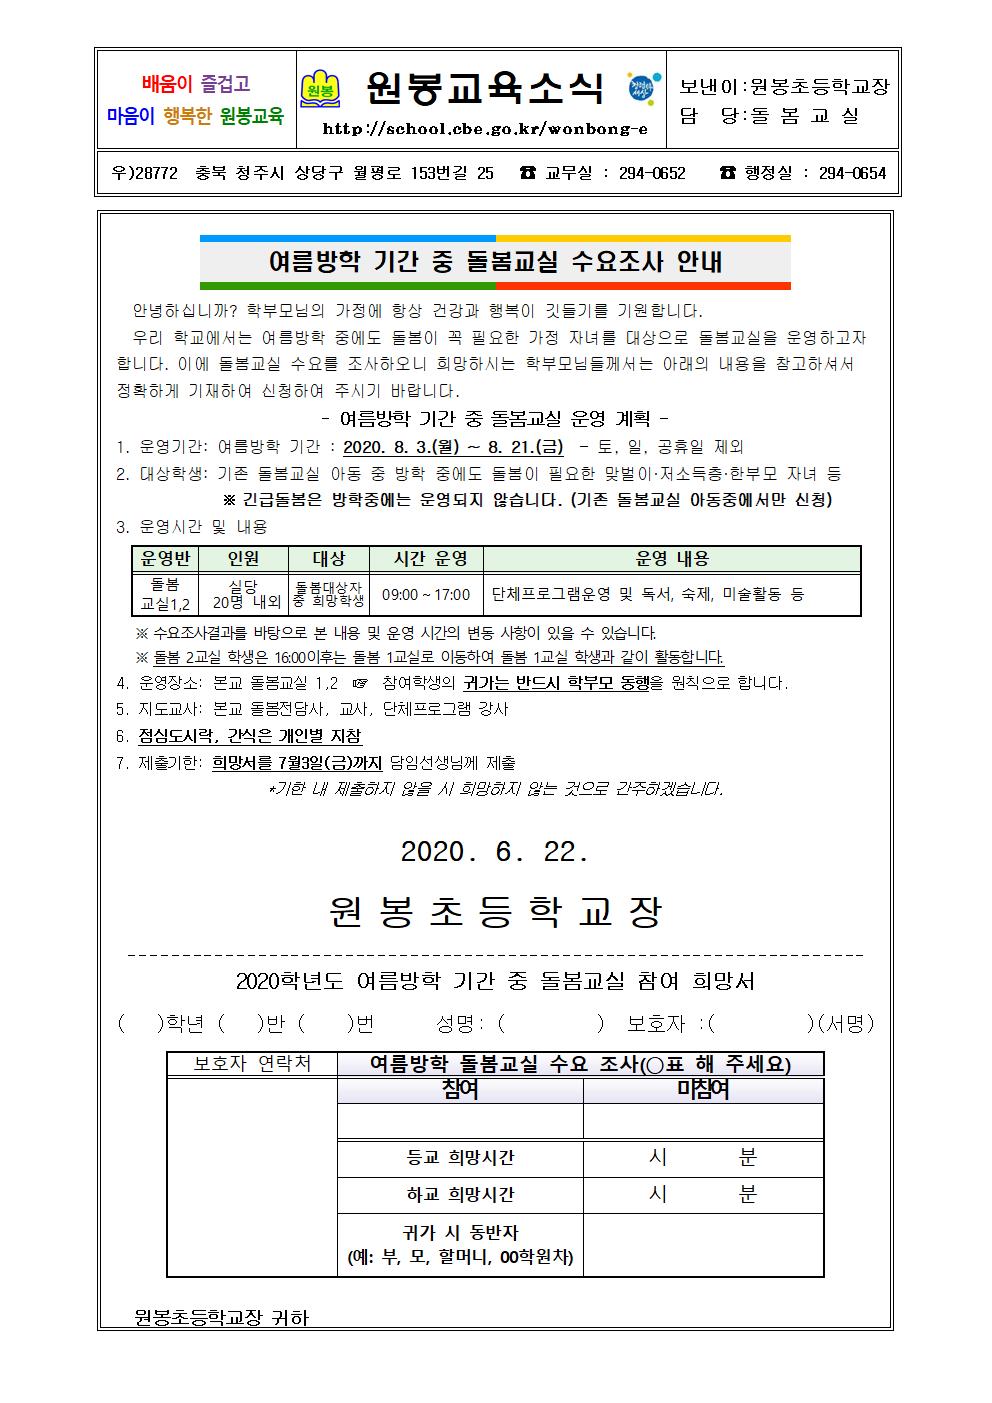 2020. 여름방학 중 돌봄교실 수요조사 가정통신문001